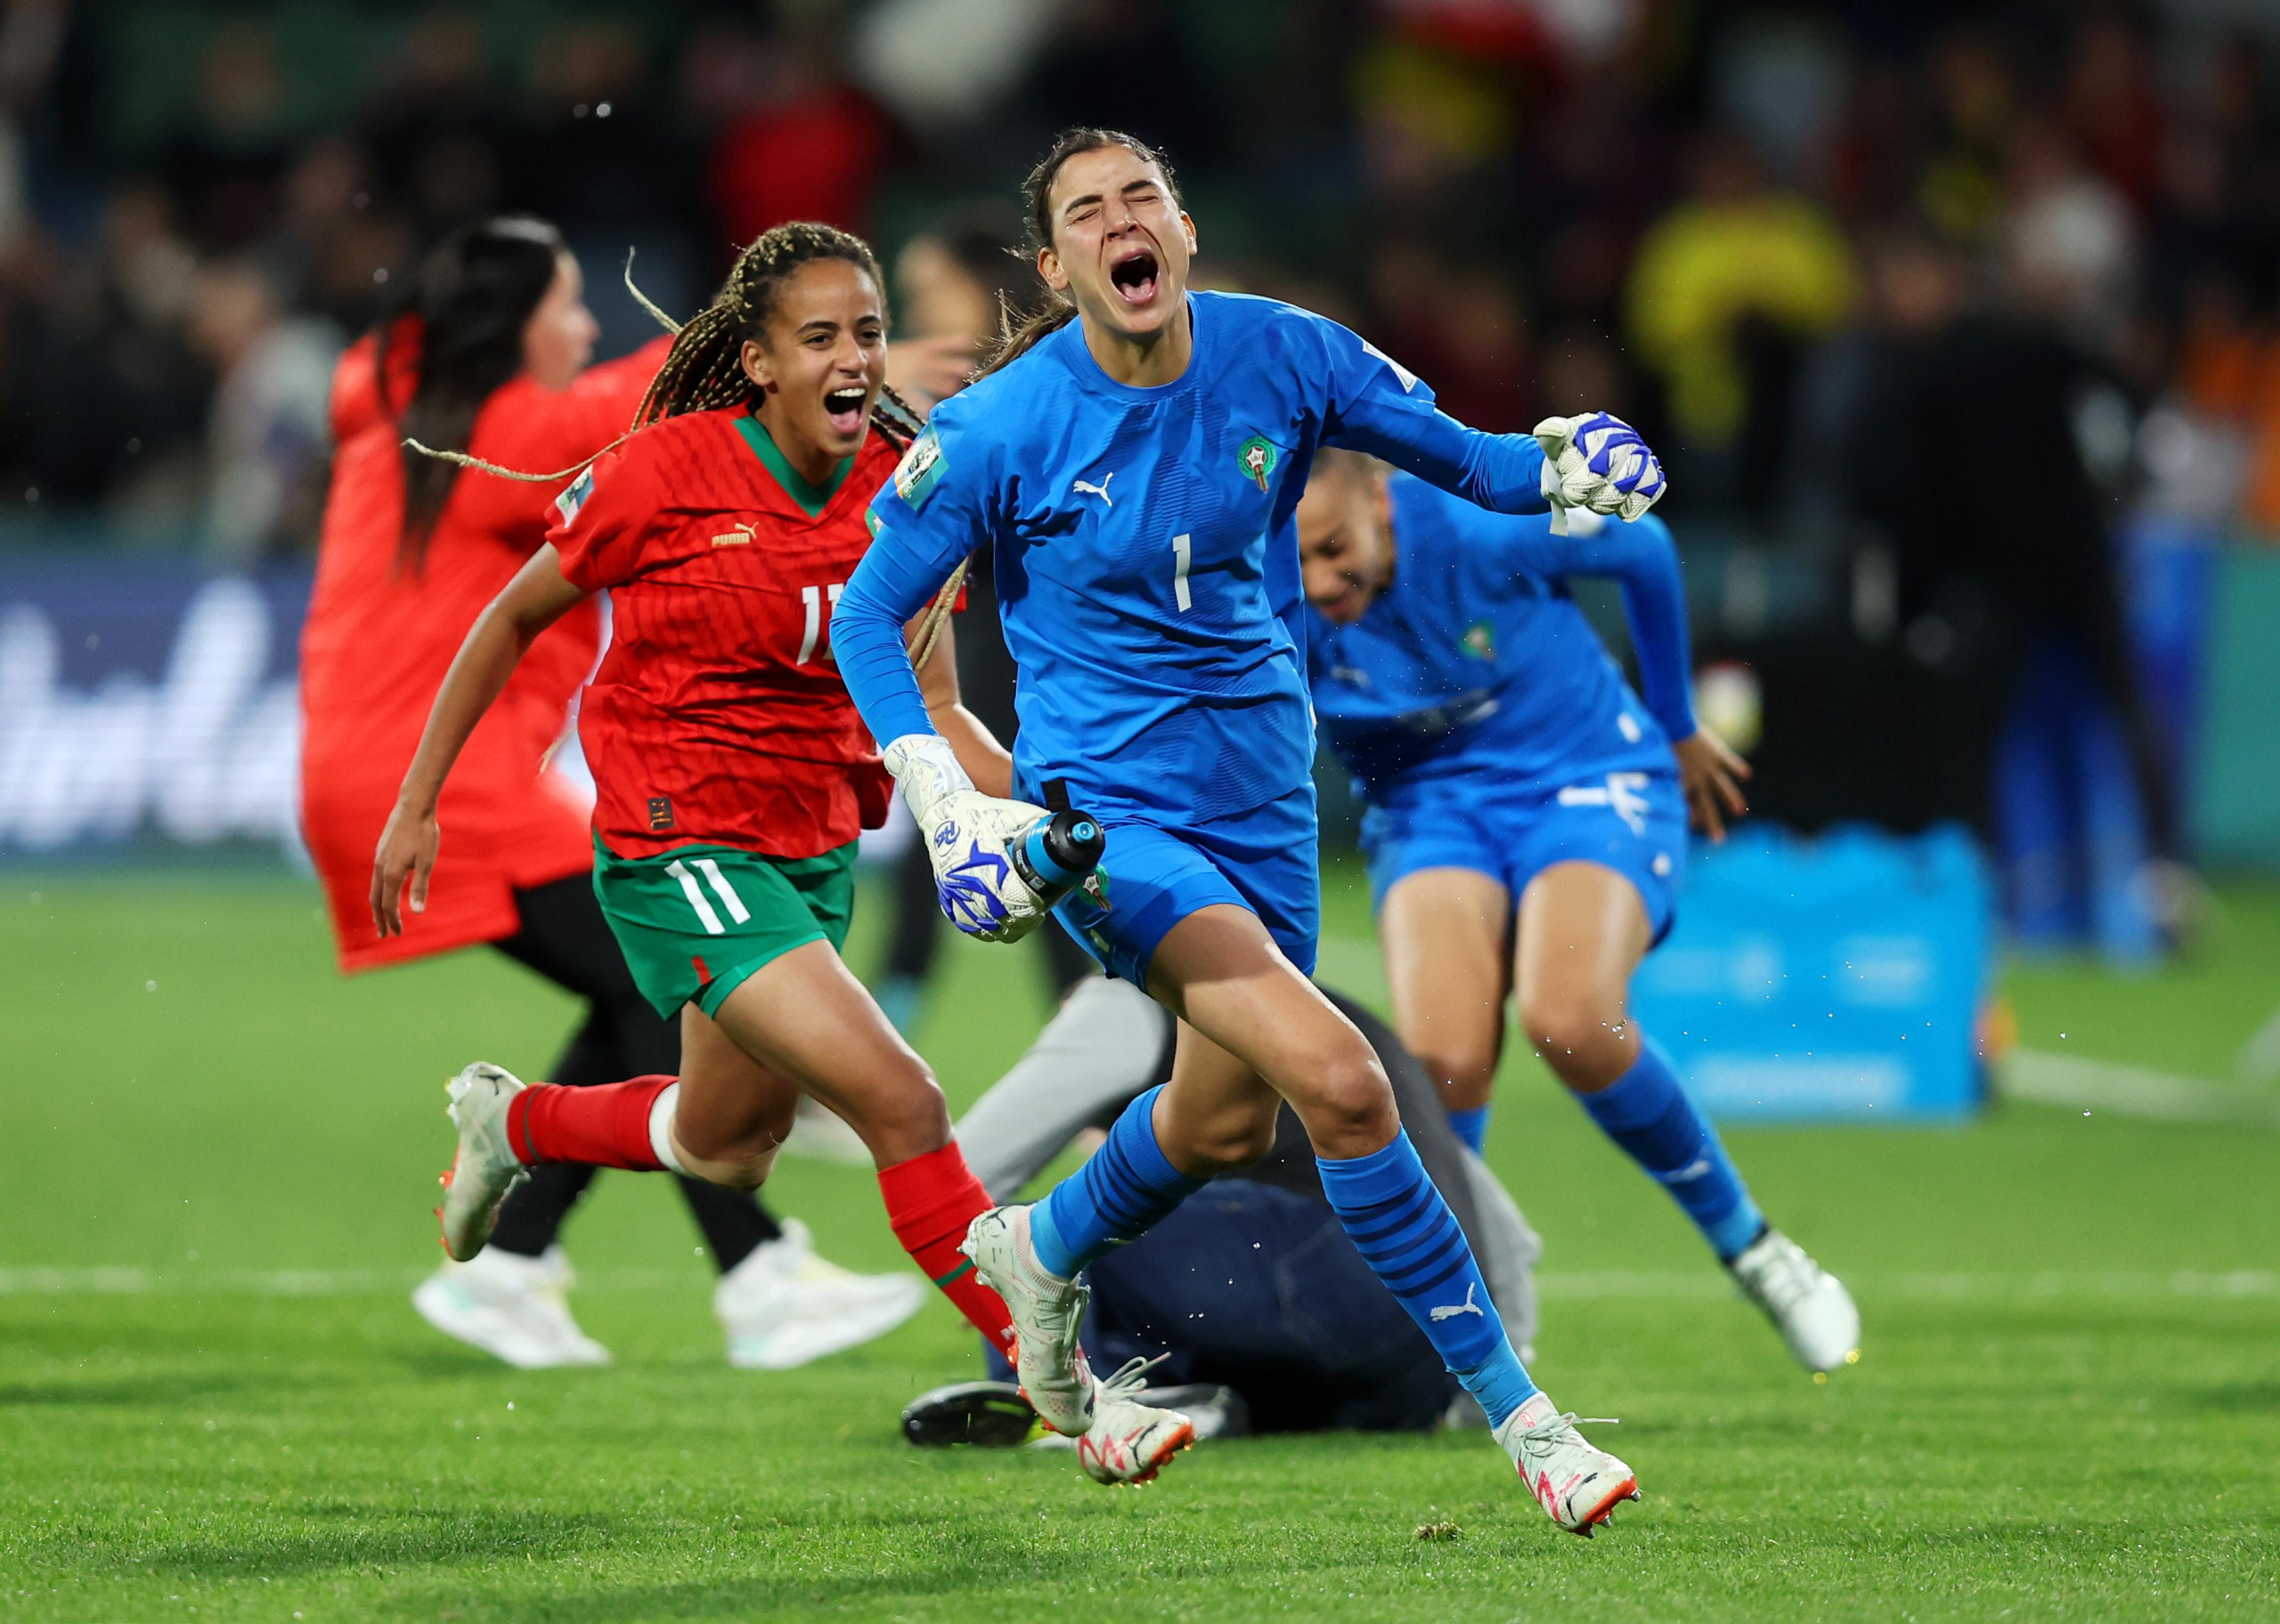 الدكيك: تأهل “اللبؤات” يؤكد الطفرة النوعية لكرة القدم المغربية